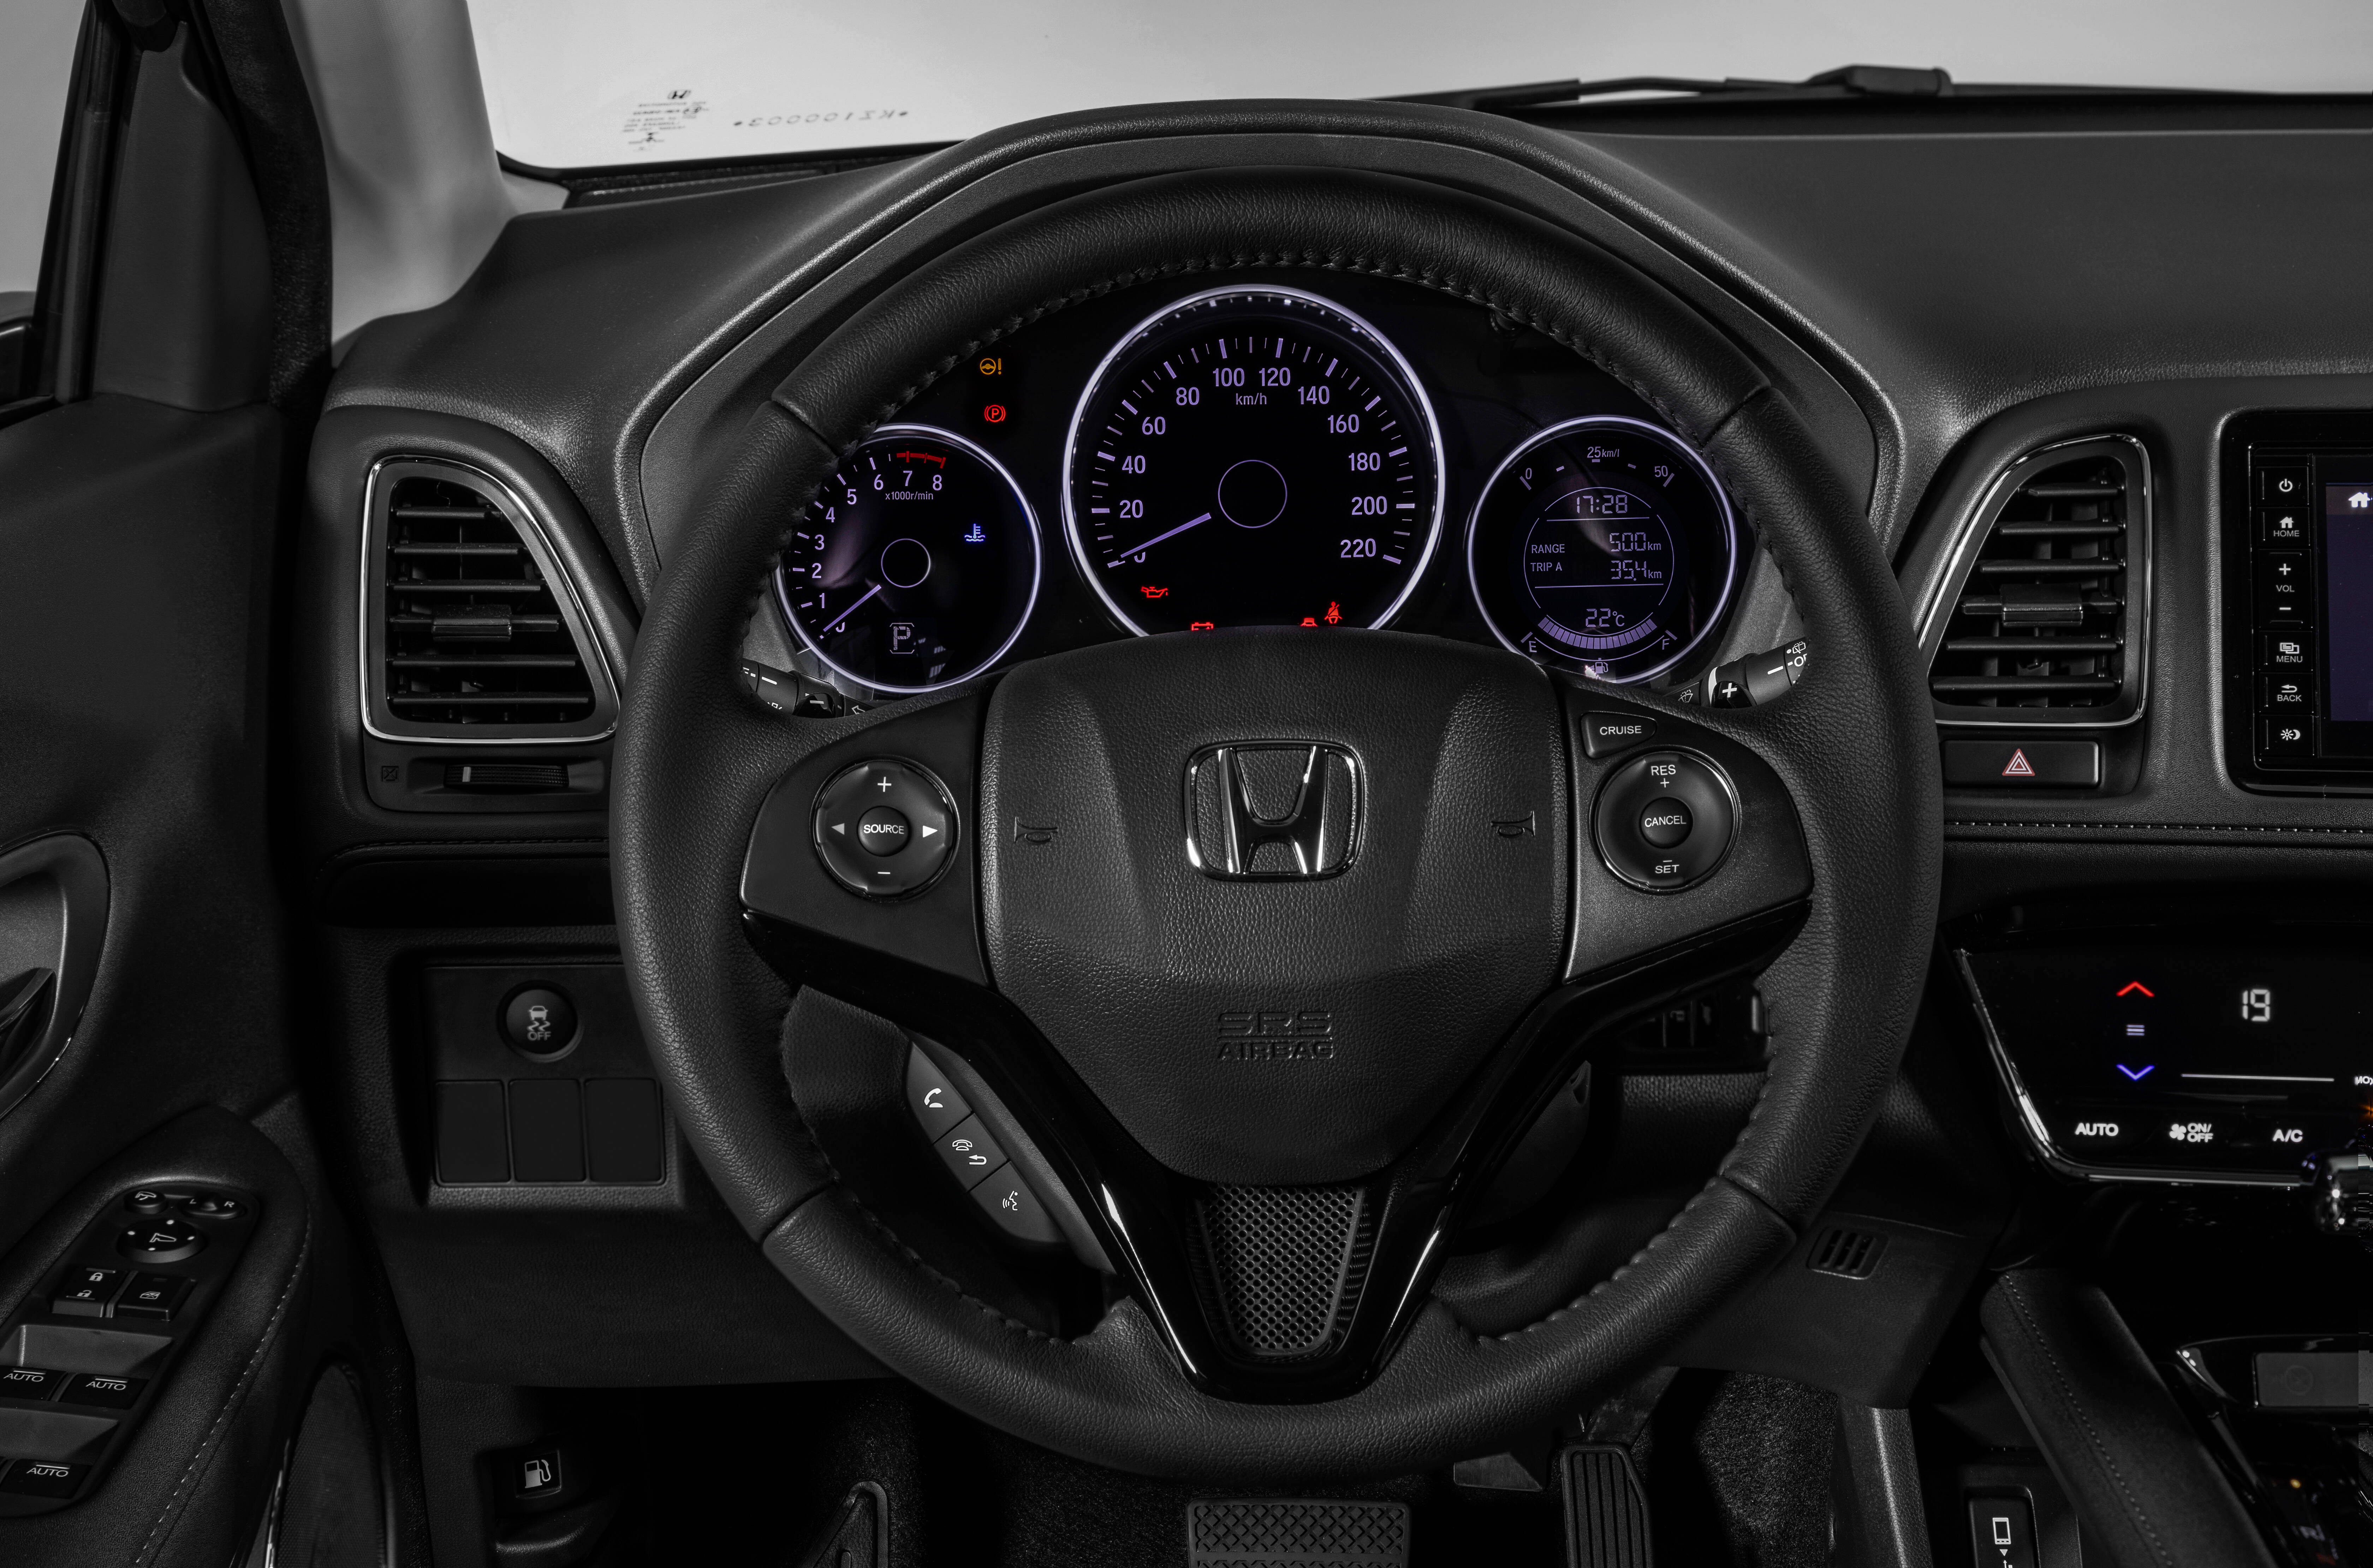 Honda HR-V. Foto: Divulgação